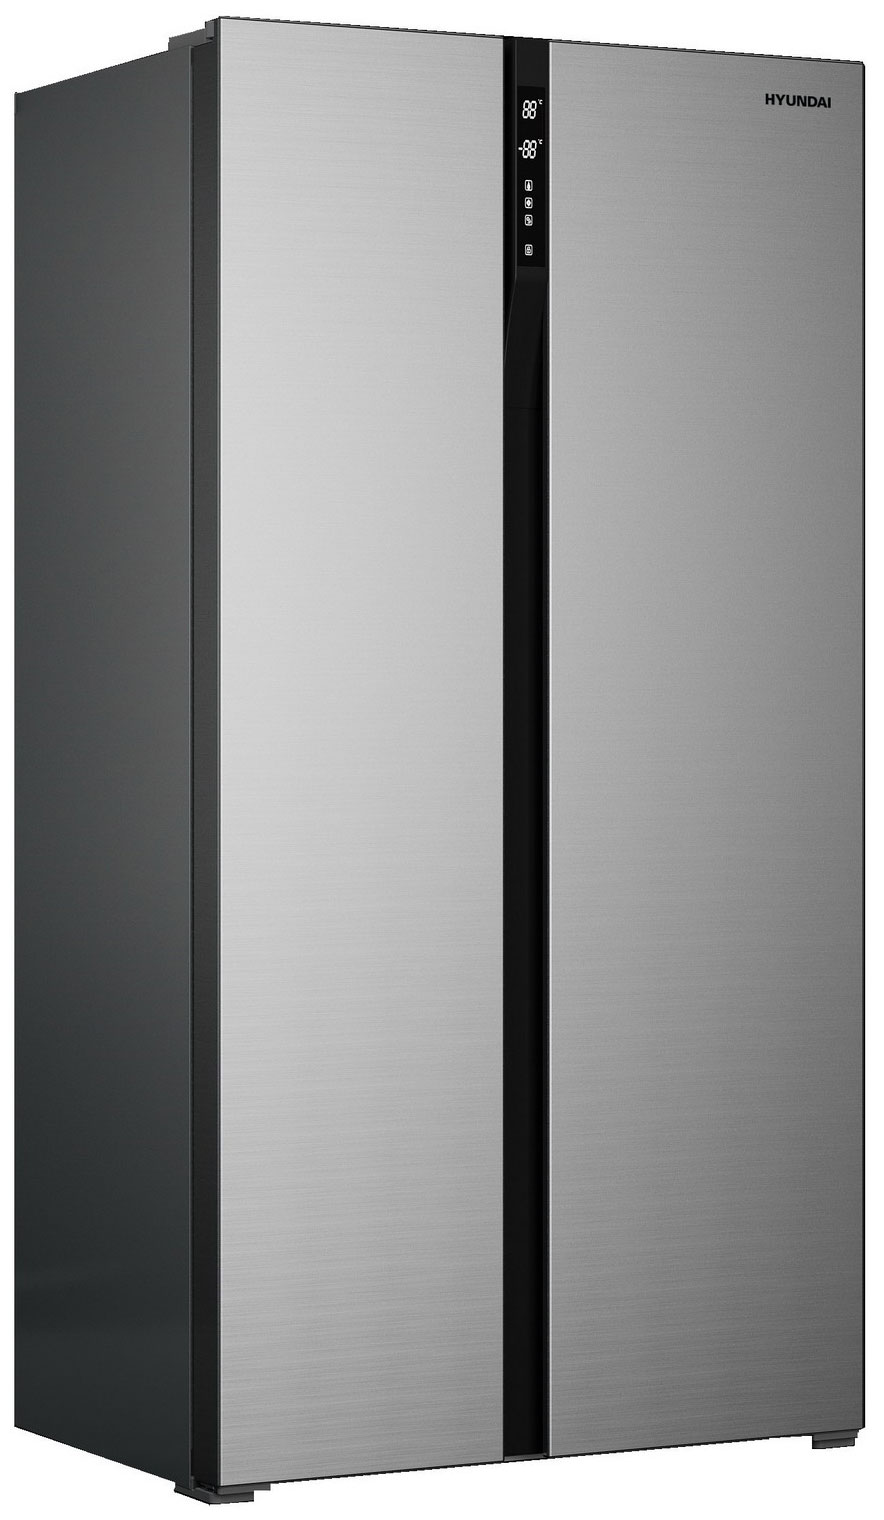 Холодильник Side by Side Hyundai CS6503FV нержавеющая сталь цена и фото